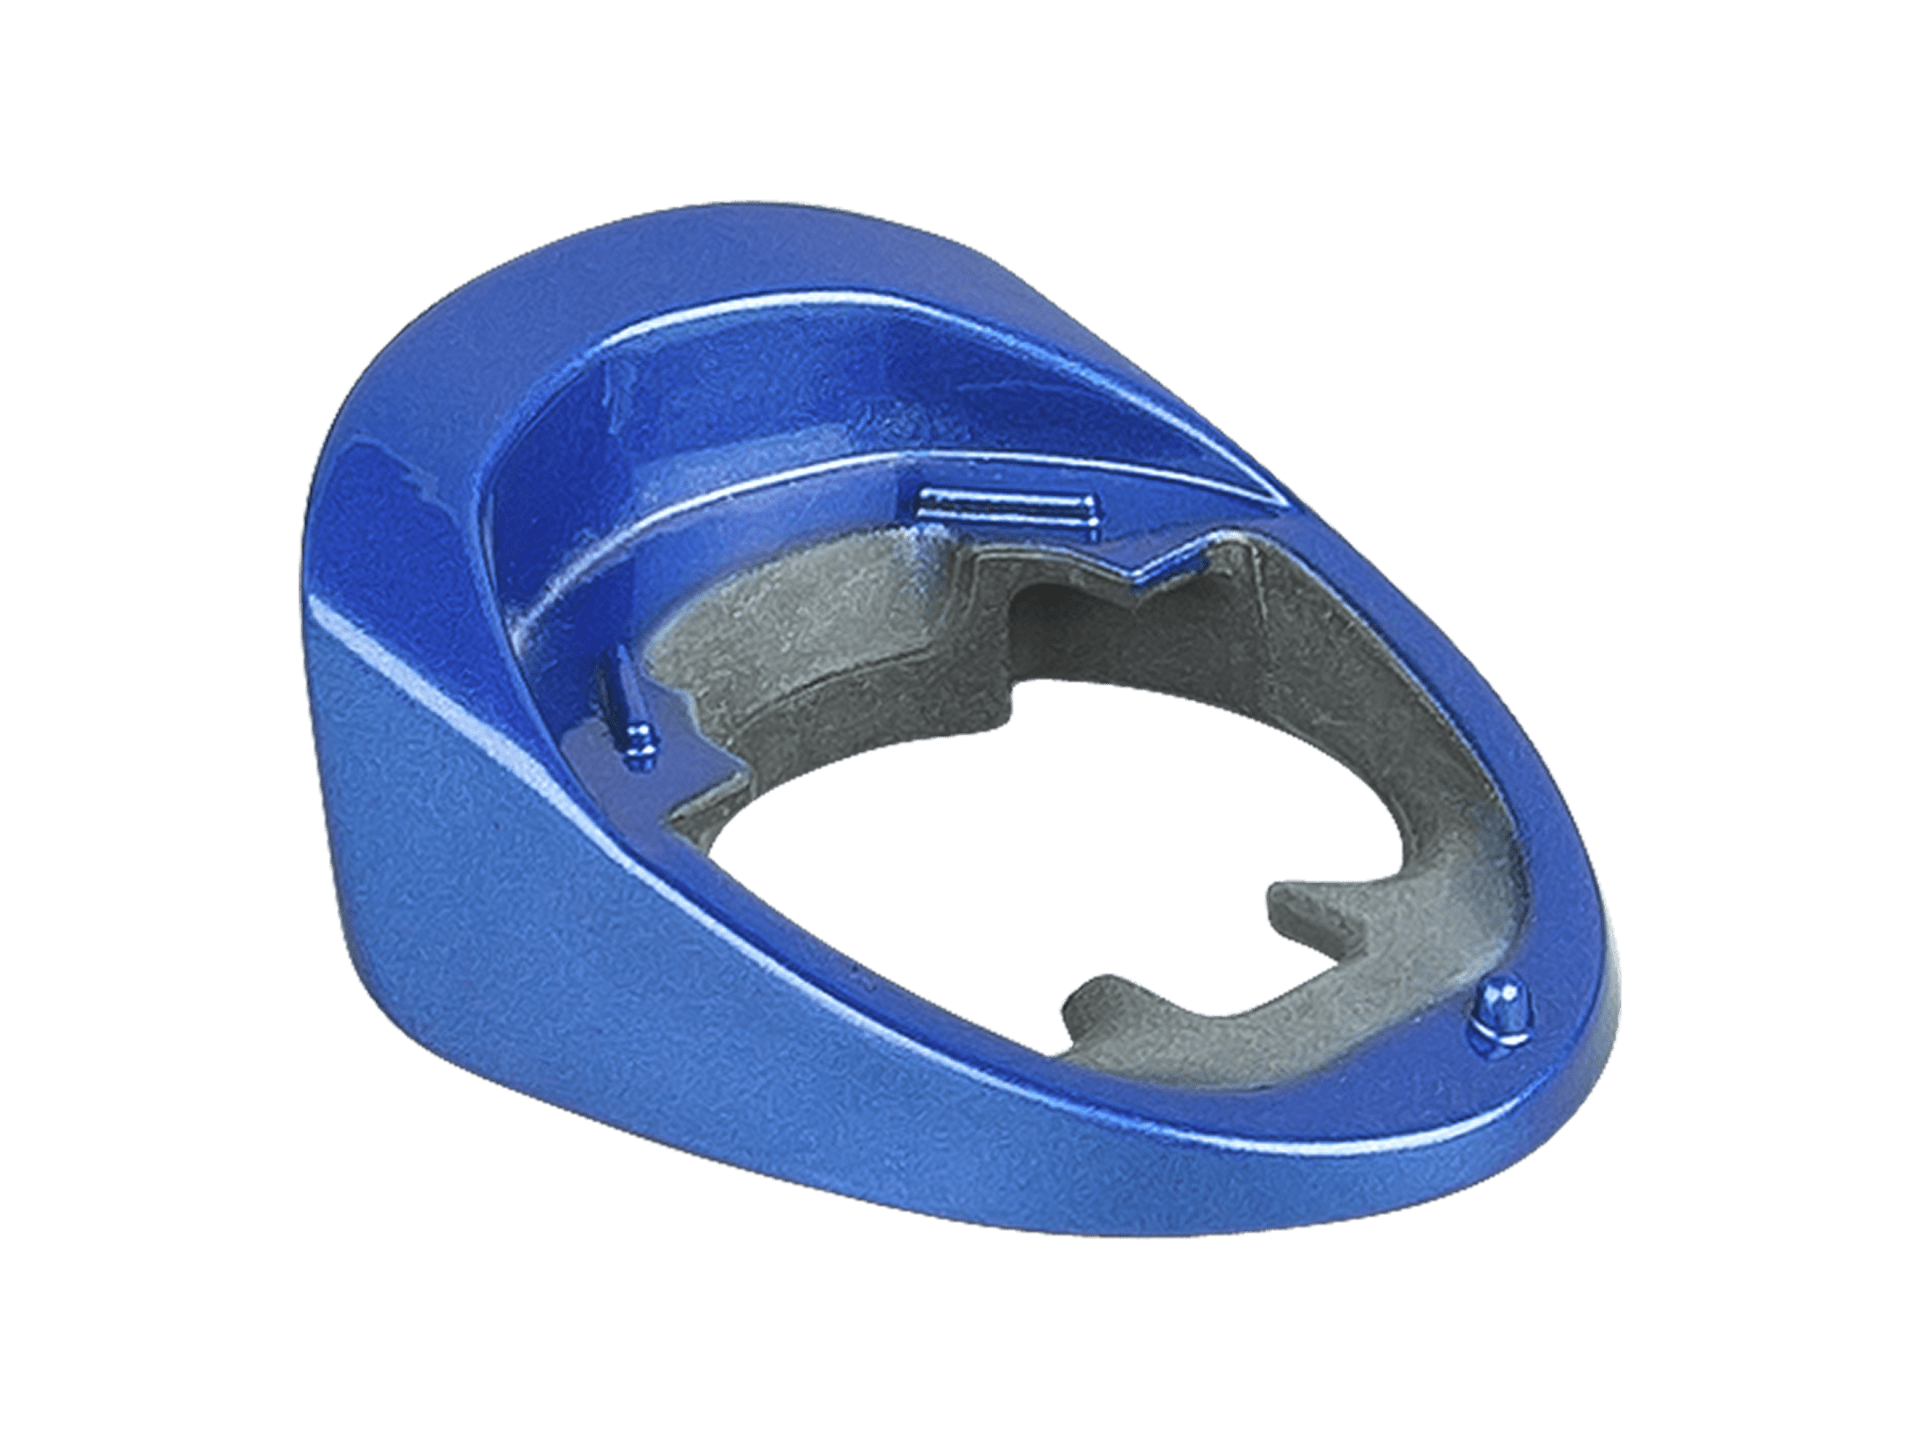 Trek Madone SL Painted Headset Covers